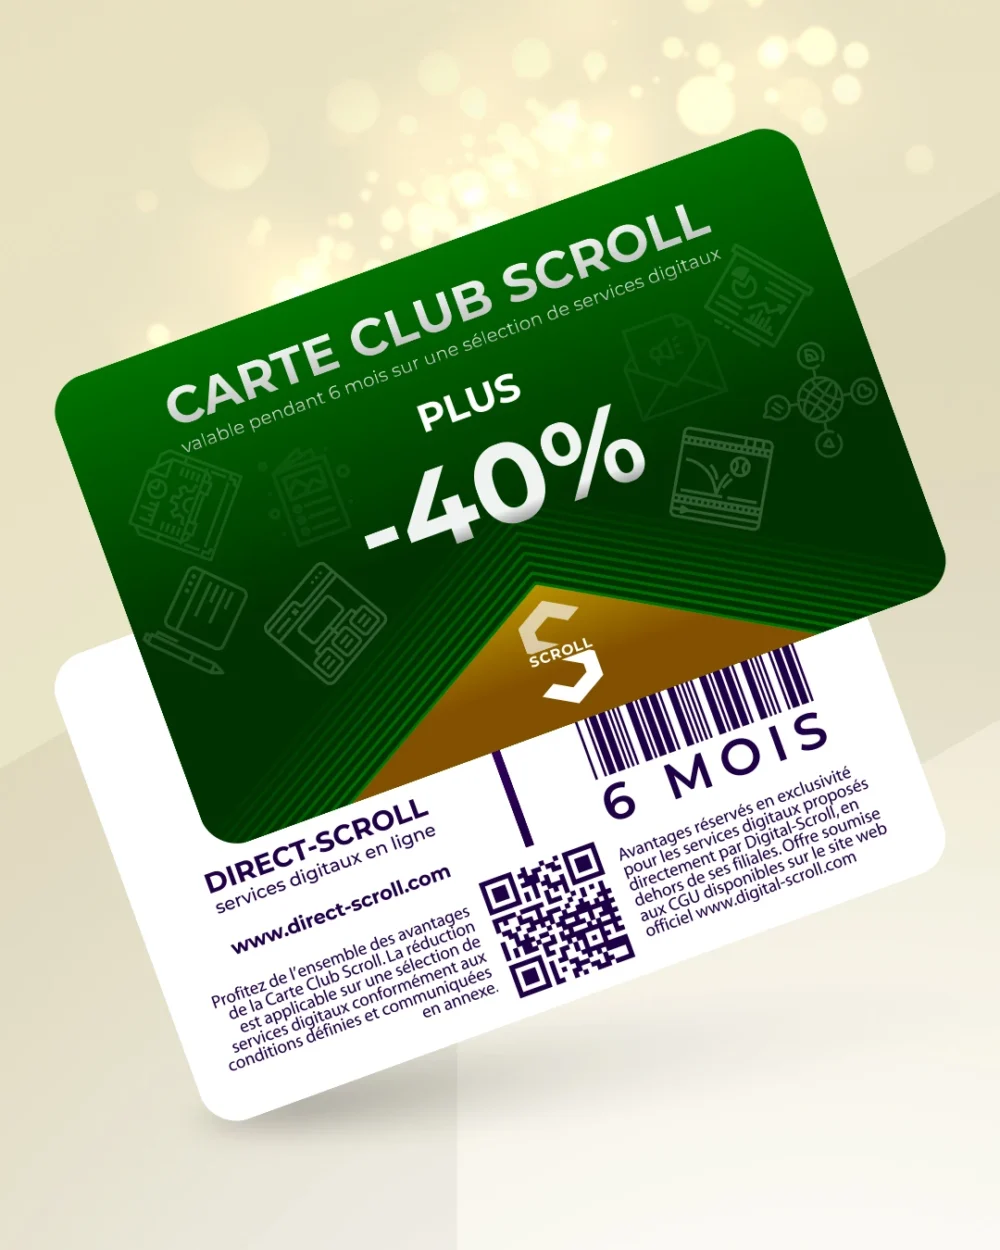 Direct-Scroll | e-Carte Club Plus -40% de Réduction sur toute la Boutique | e-Cartes Club | Slide 1 | Pack Digital Offert avec un Abonnement de 6 Mois à Notre e-Boutique de Templates pour Visuels Réseaux Sociaux